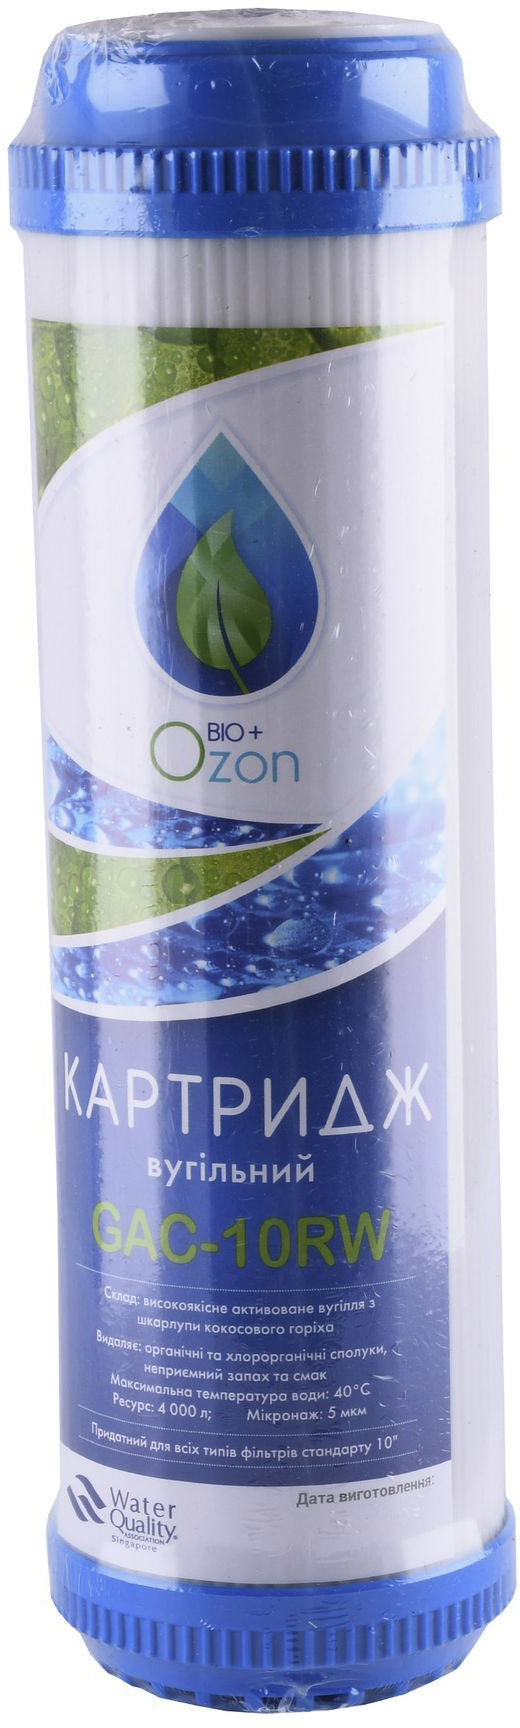 Картриджи для фильтров Ozon Bio+